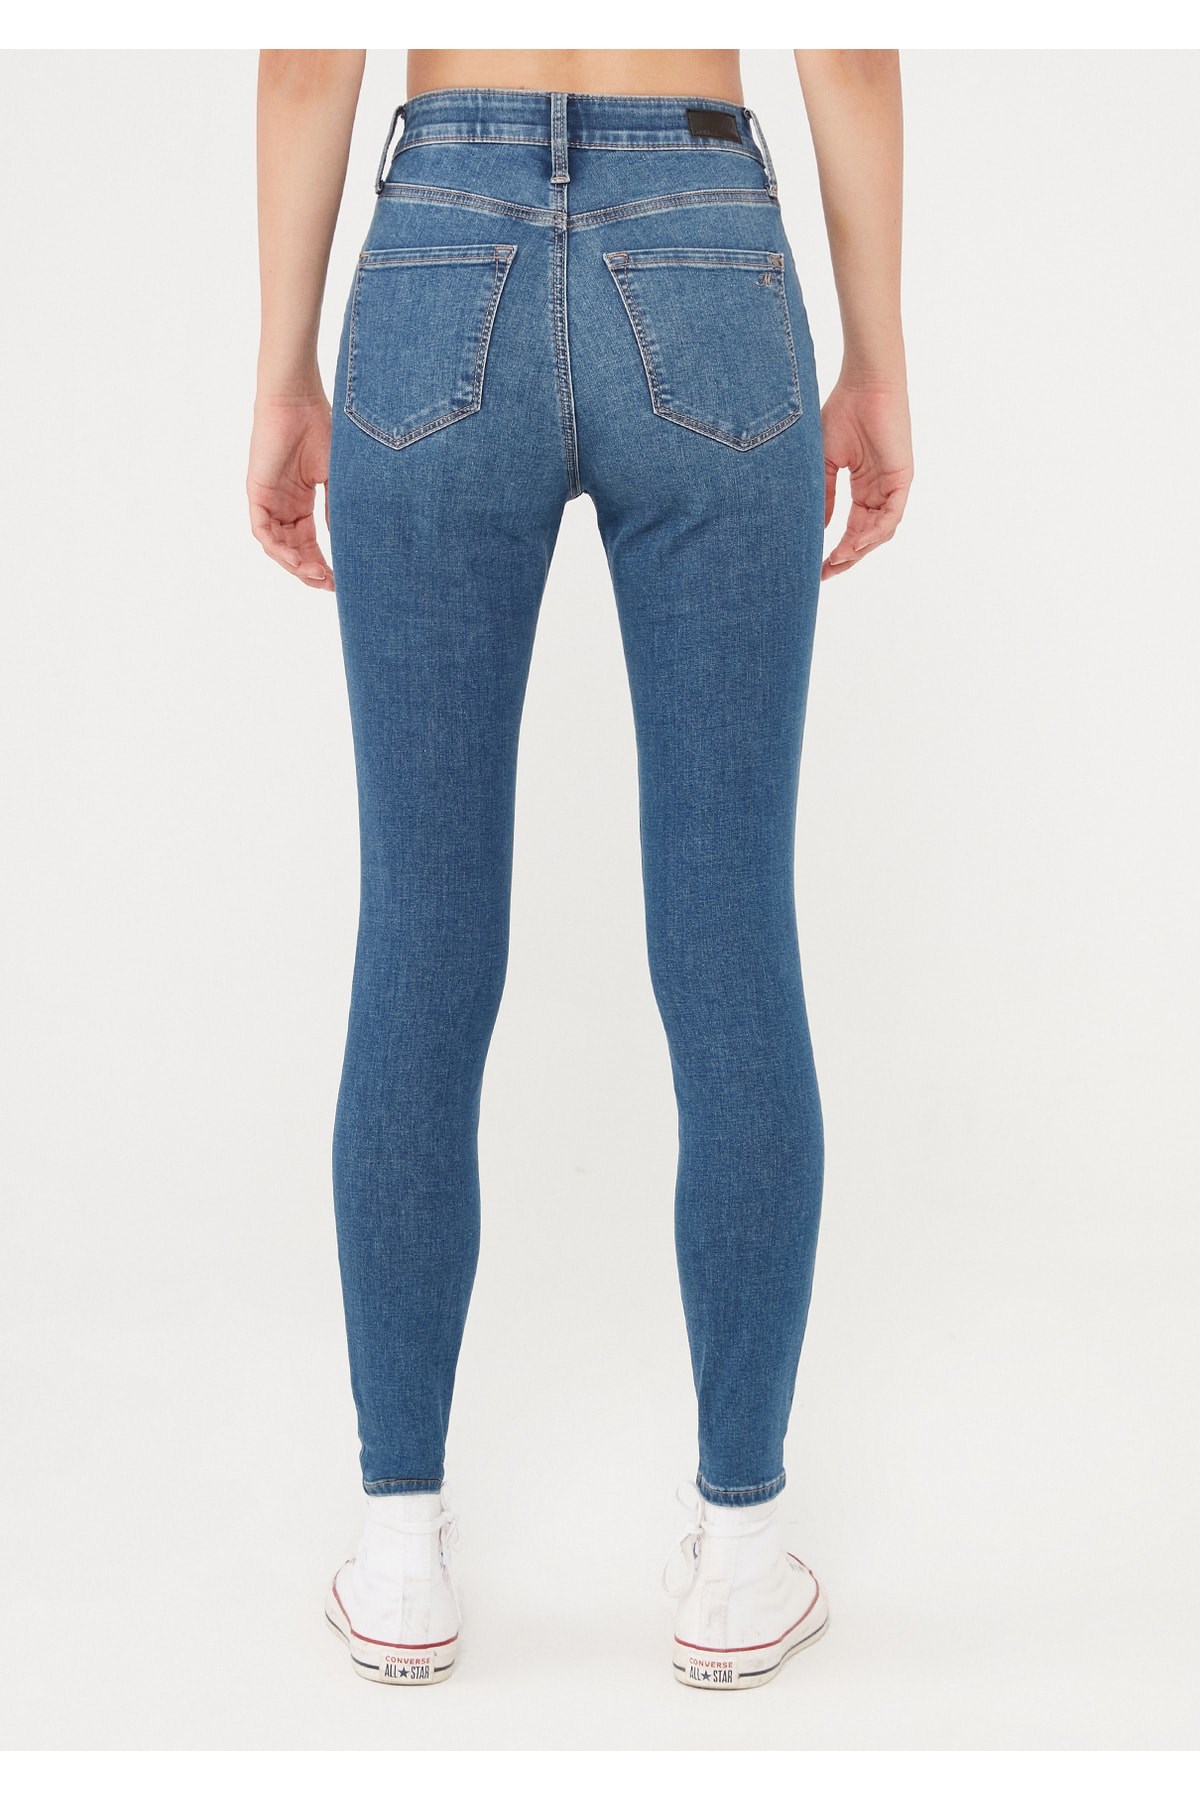 Mavi Jeans Kadın Pantolon 101065-32534 